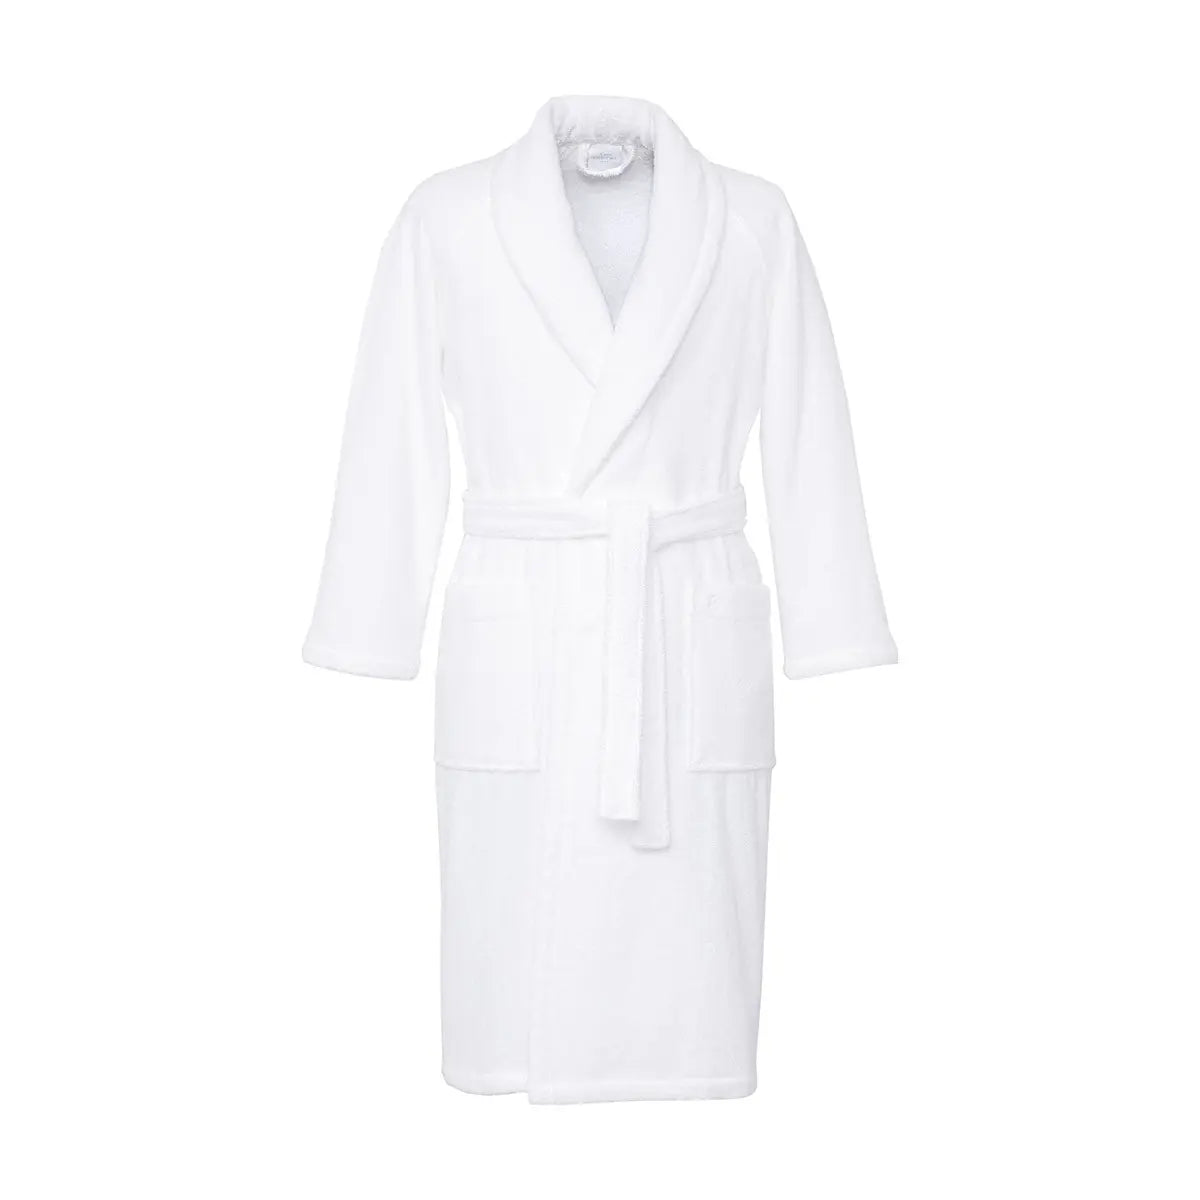 Yves Delorme Etoile Blanc Bath Robe